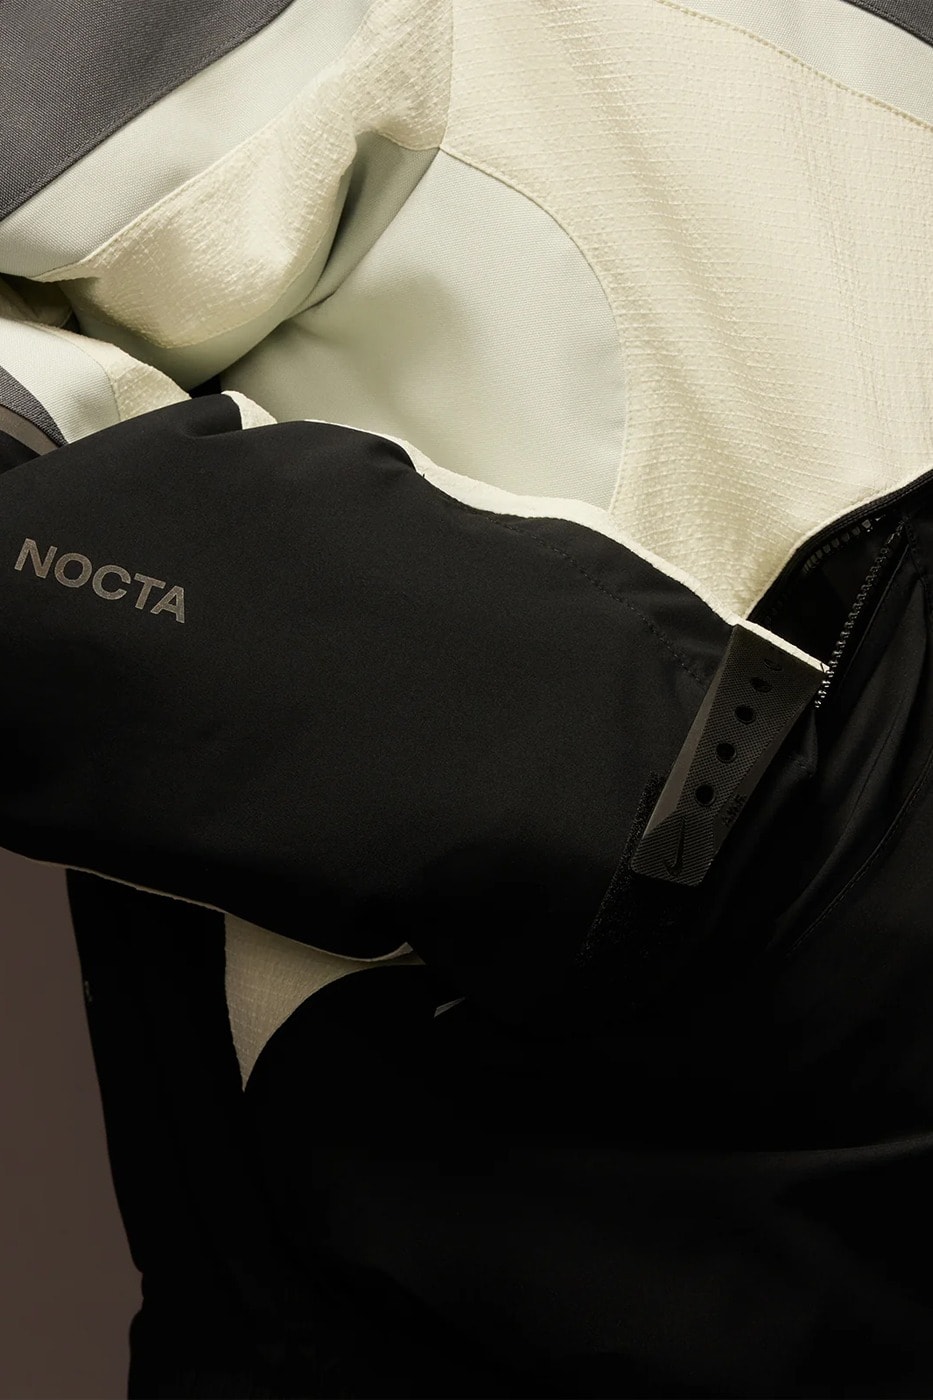 Nike NOCTA 8K Peaks 全新服裝系列正式登場